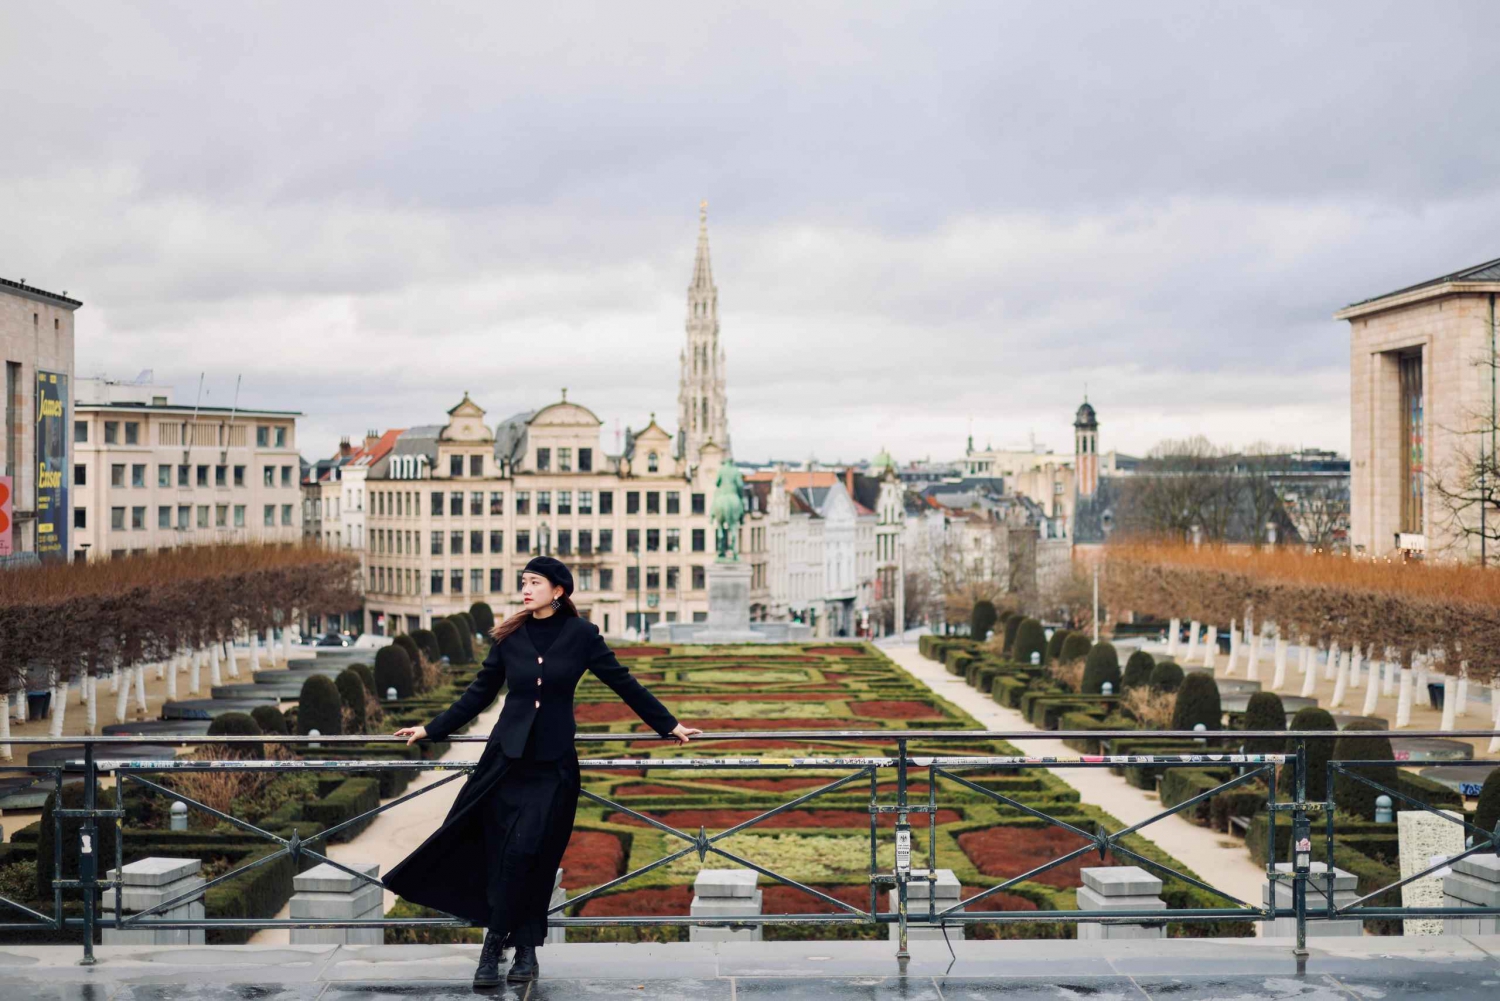 Fotoshoot i Bruxelles med en professionel fotograf